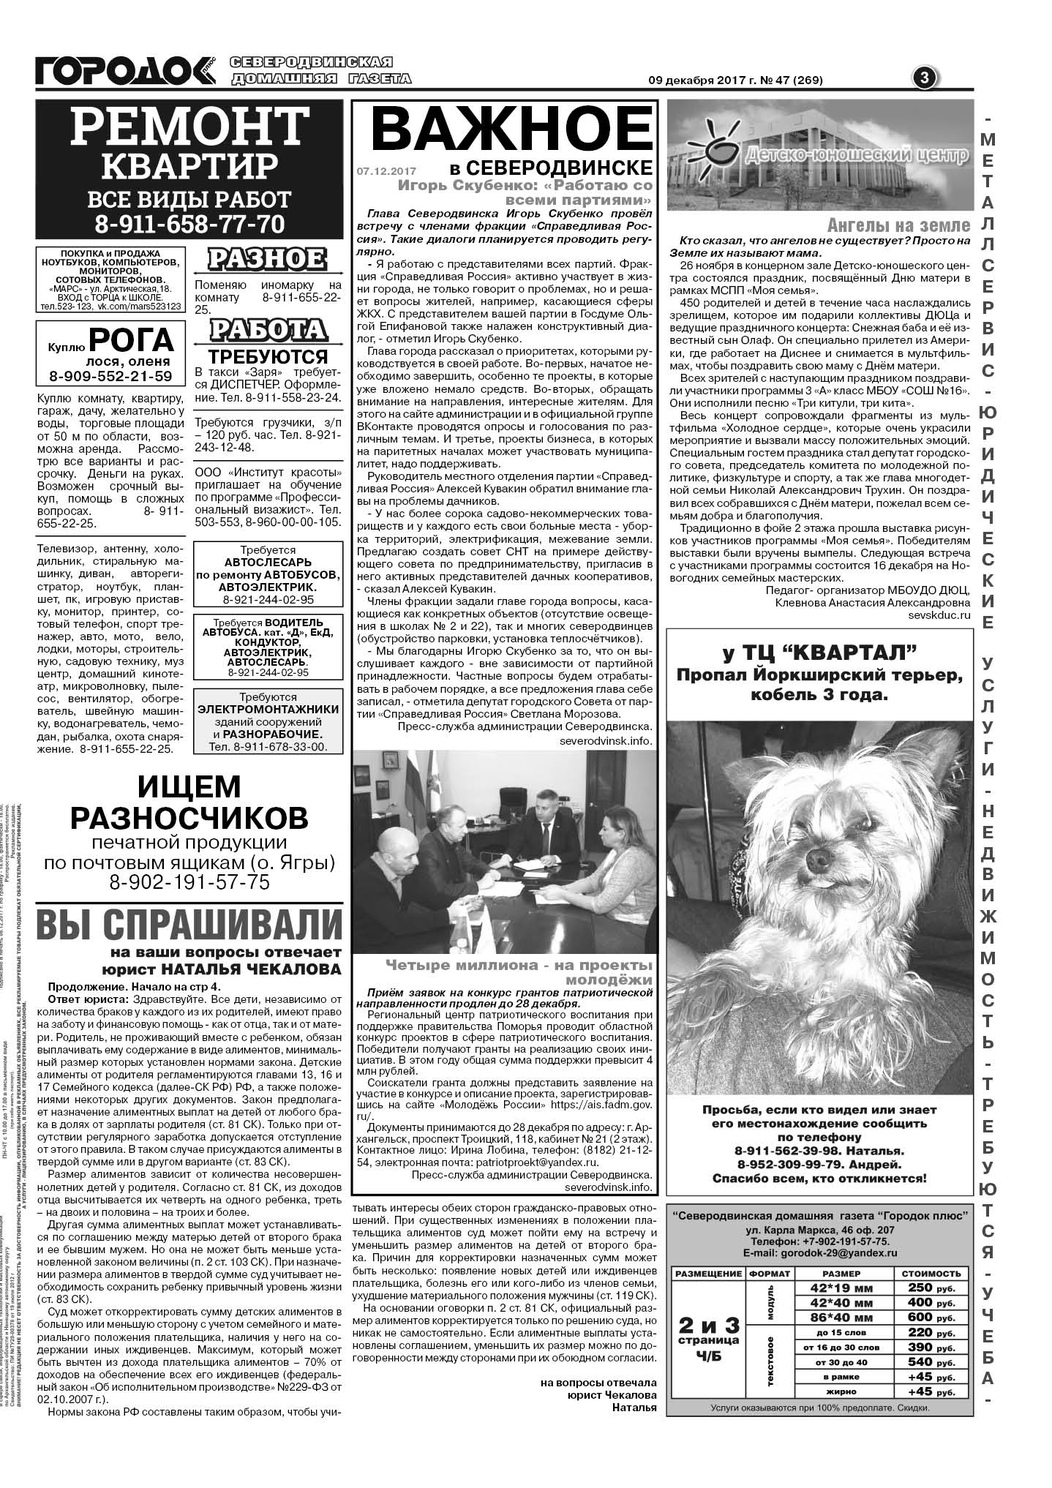 Городок плюс, выпуск номер 47 от 09 декабря 2017 года, страница 3.